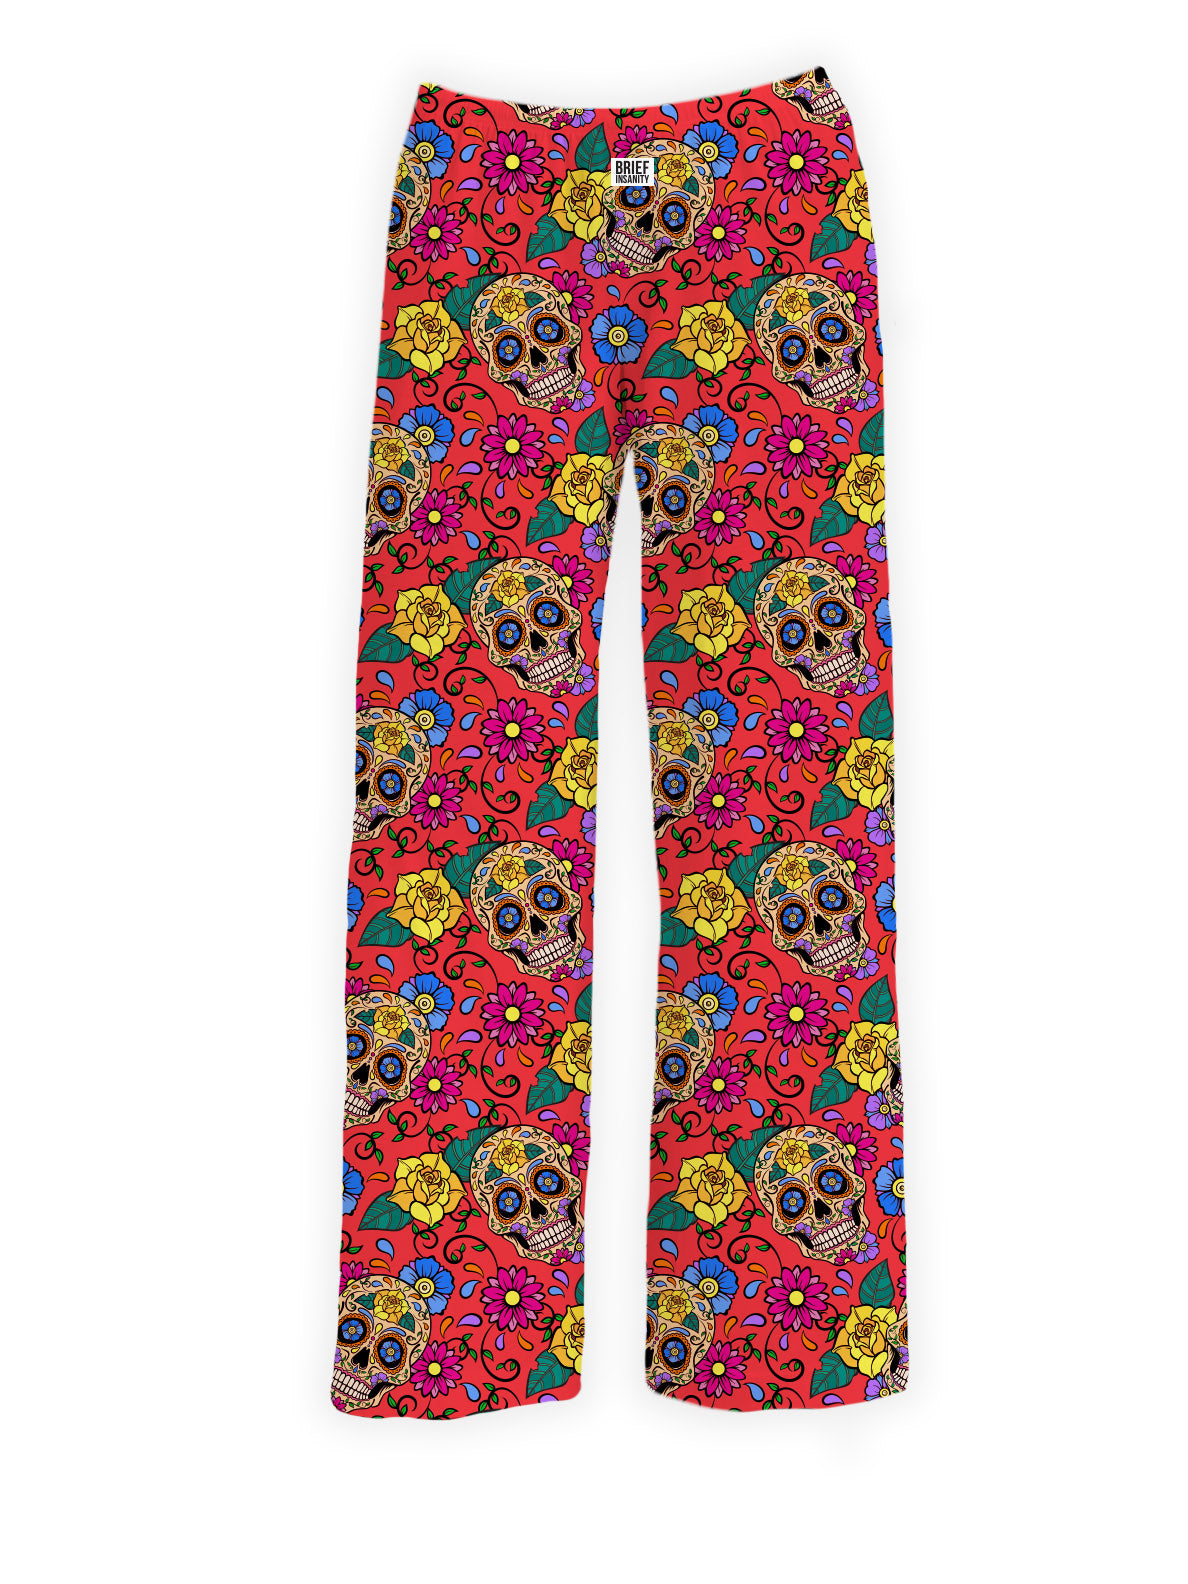 Women's Pants XL Lounge Sleep Skulls Soft De Los Muertos Multicolor  Halloween